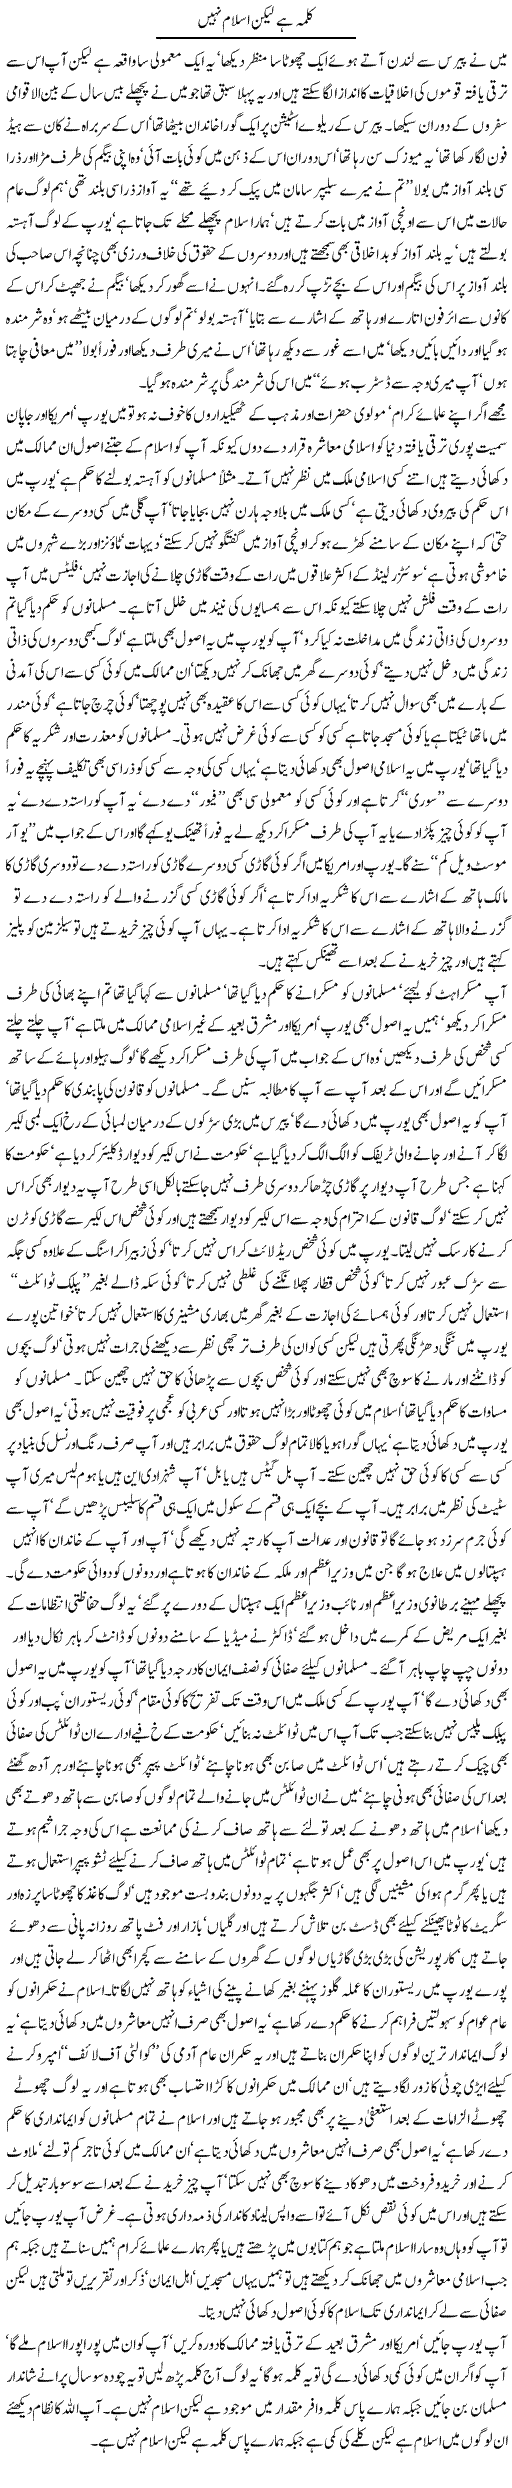 Kalma hai lekin islam nahin - Javed Chaudhry